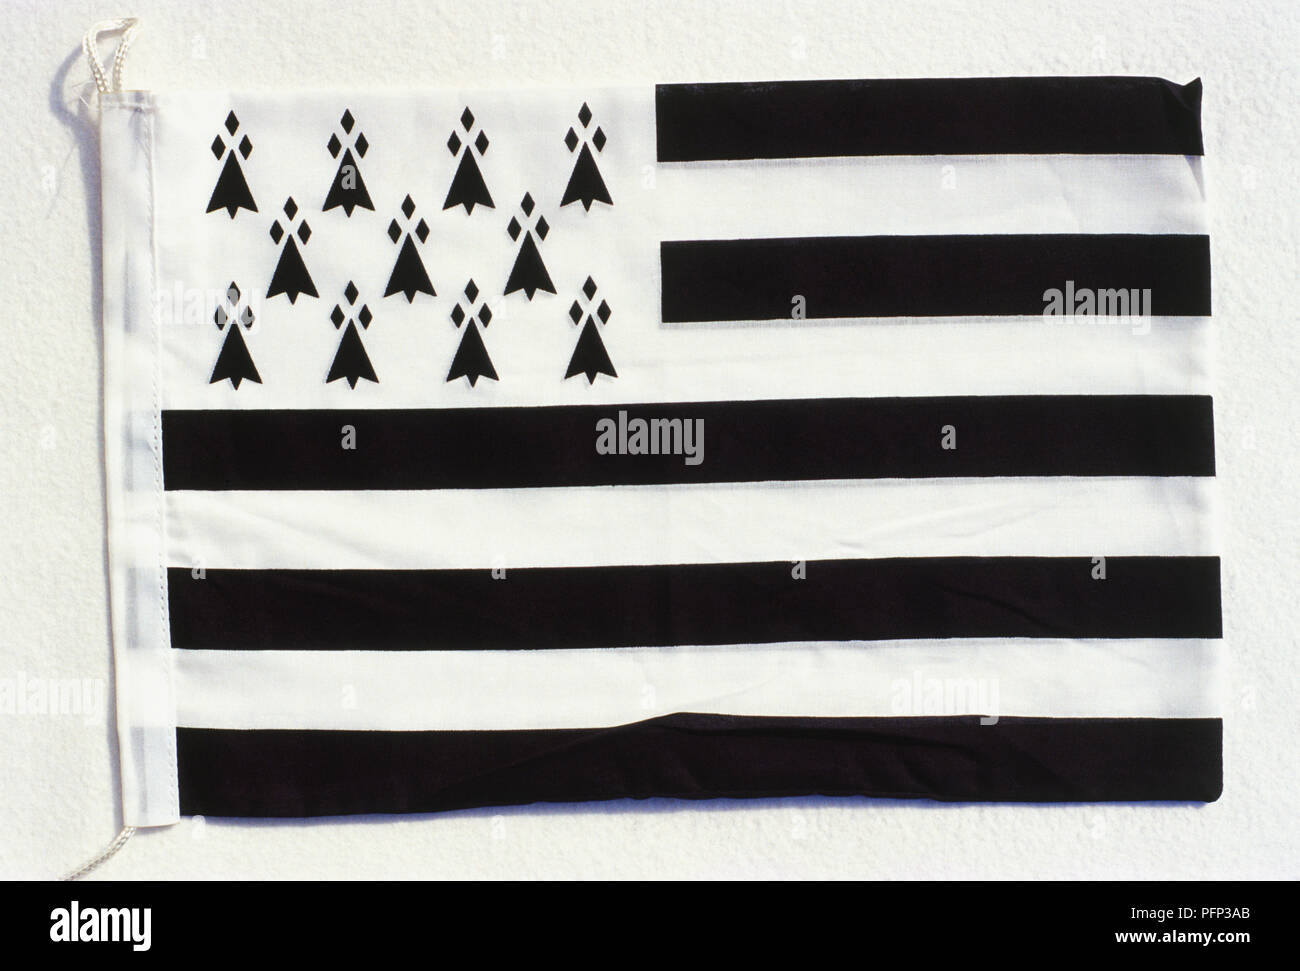 Frankreich, Bretagne, Gwenn-ha-du, bretonische schwarz-weiß Flagge, Alamy - Stockfotografie gestreift